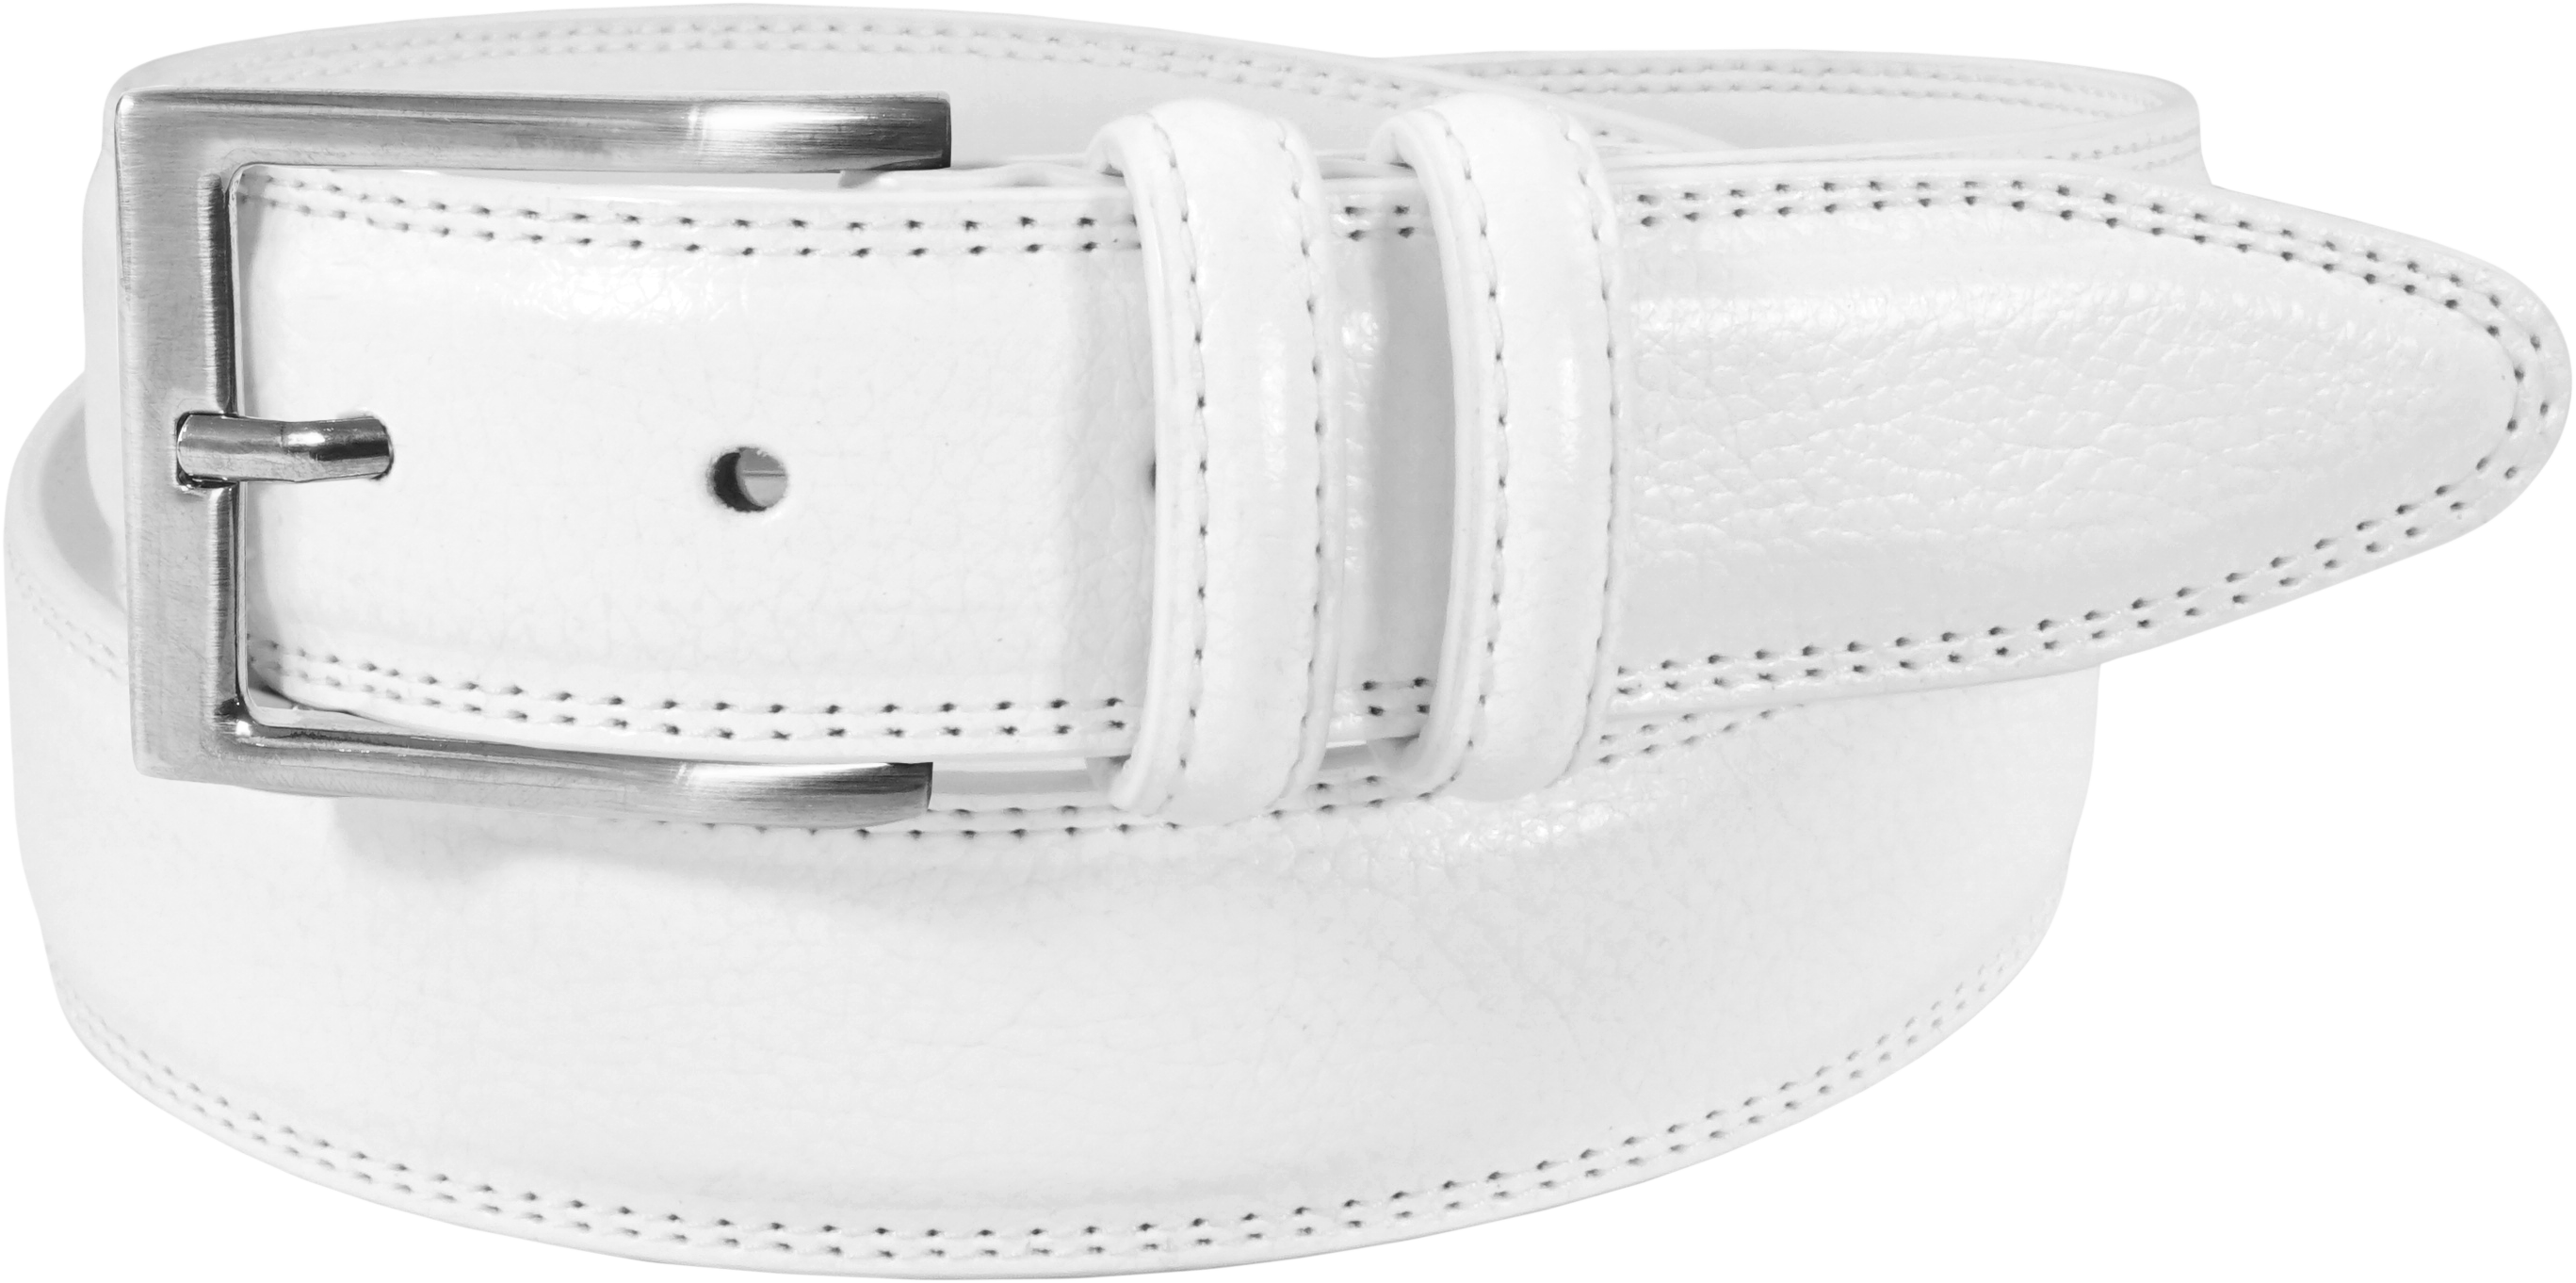 Florsheim Belts Belt